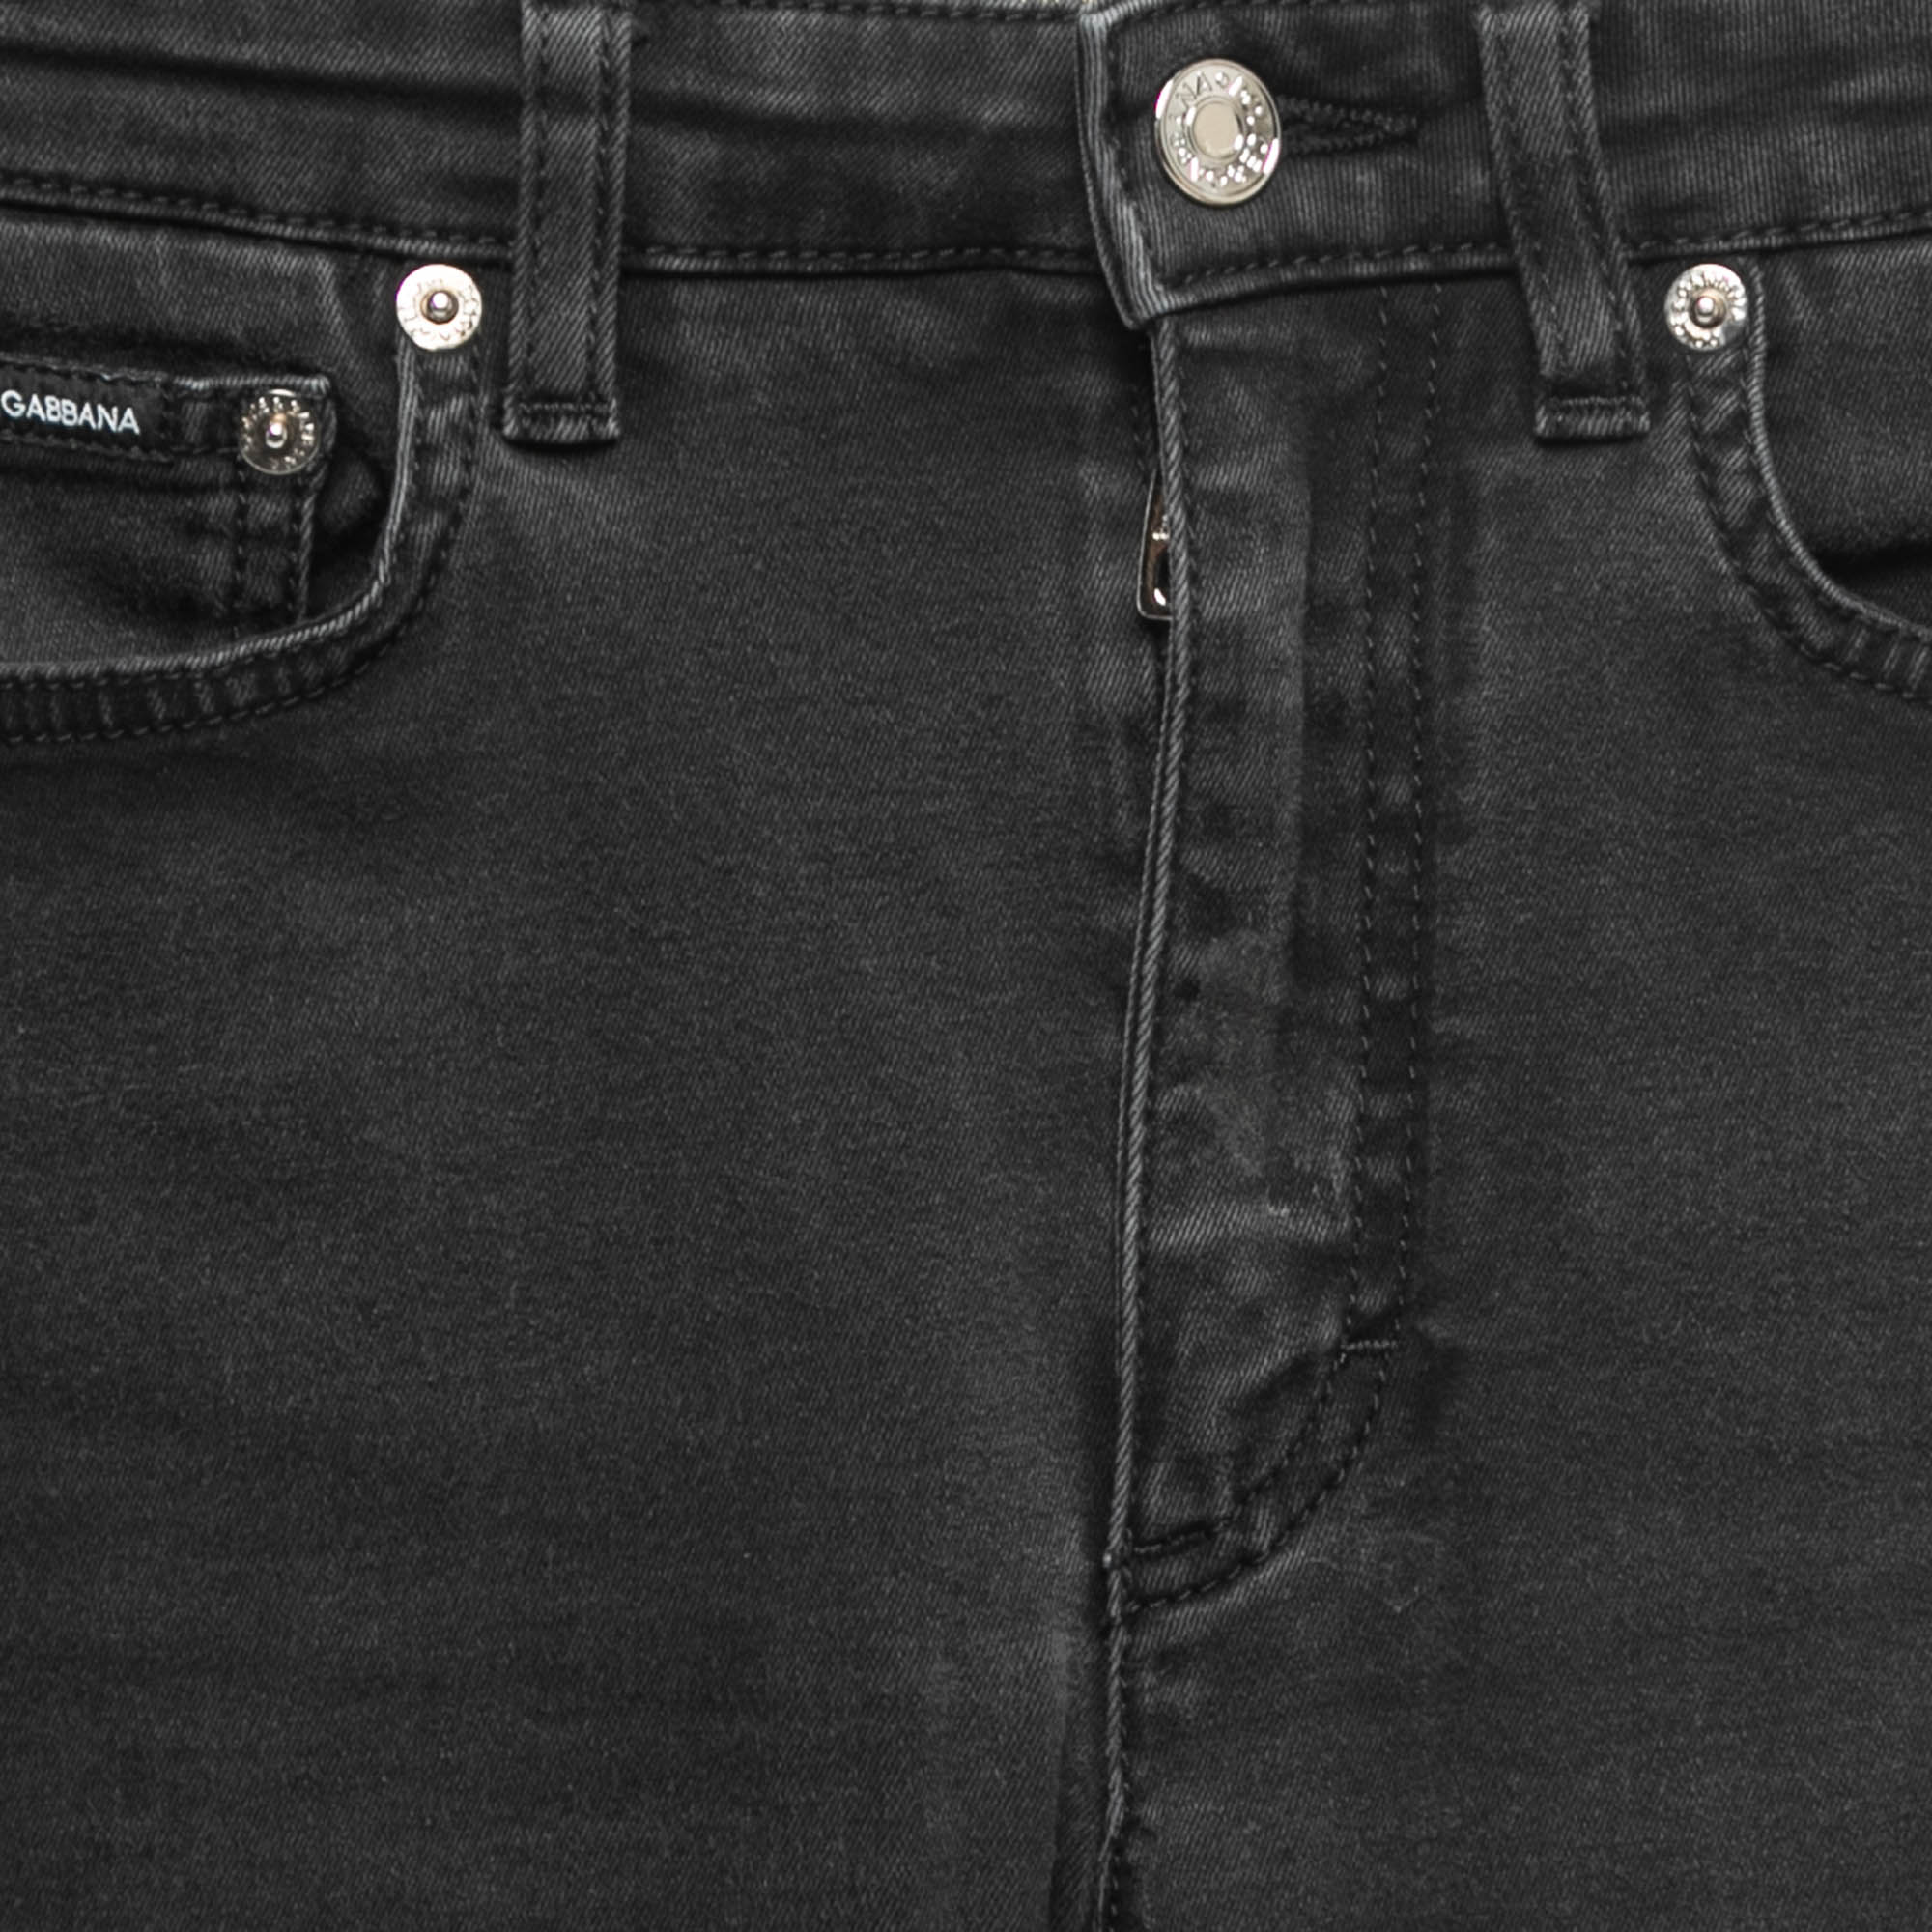 Dolce & Gabbana Black Denim Audrey Skinny Jeans XS Waist 24